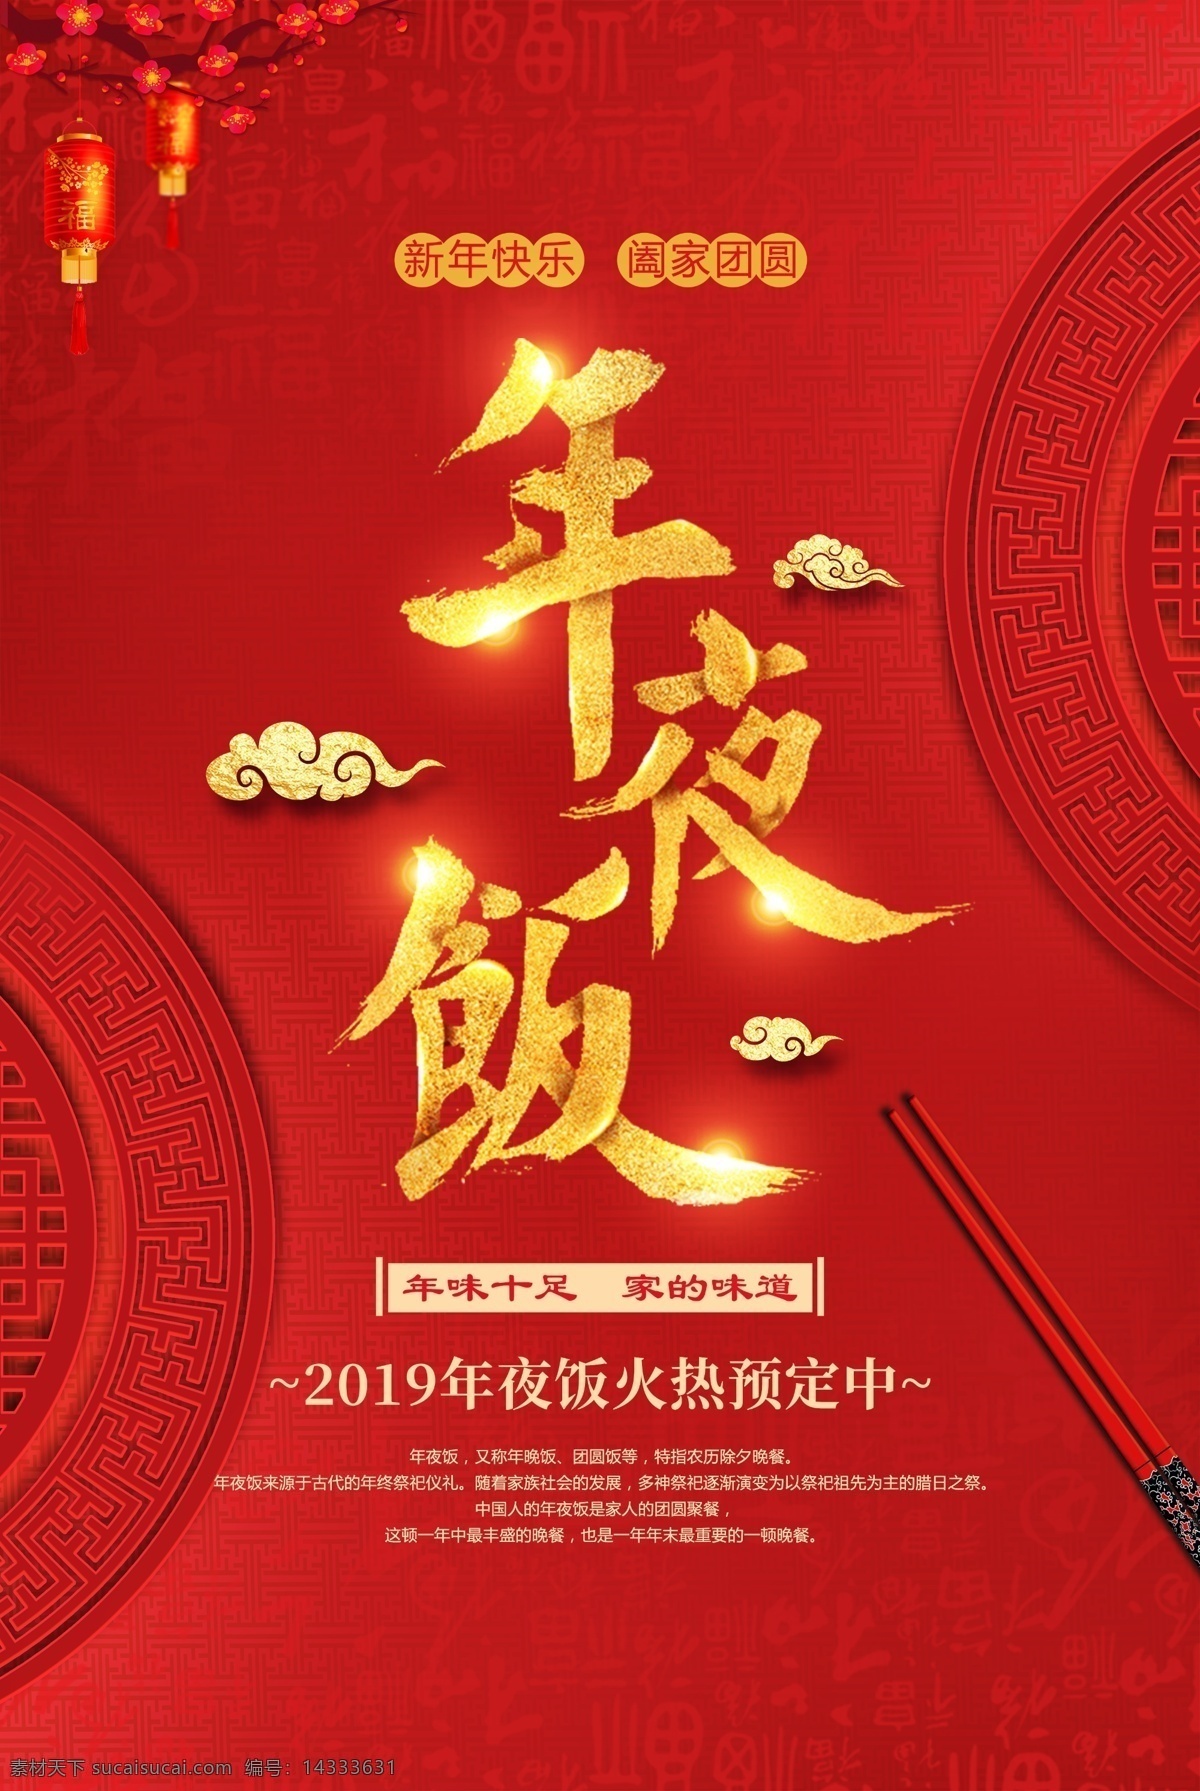 年夜饭 红色 传统 喜庆 海报 传统节日